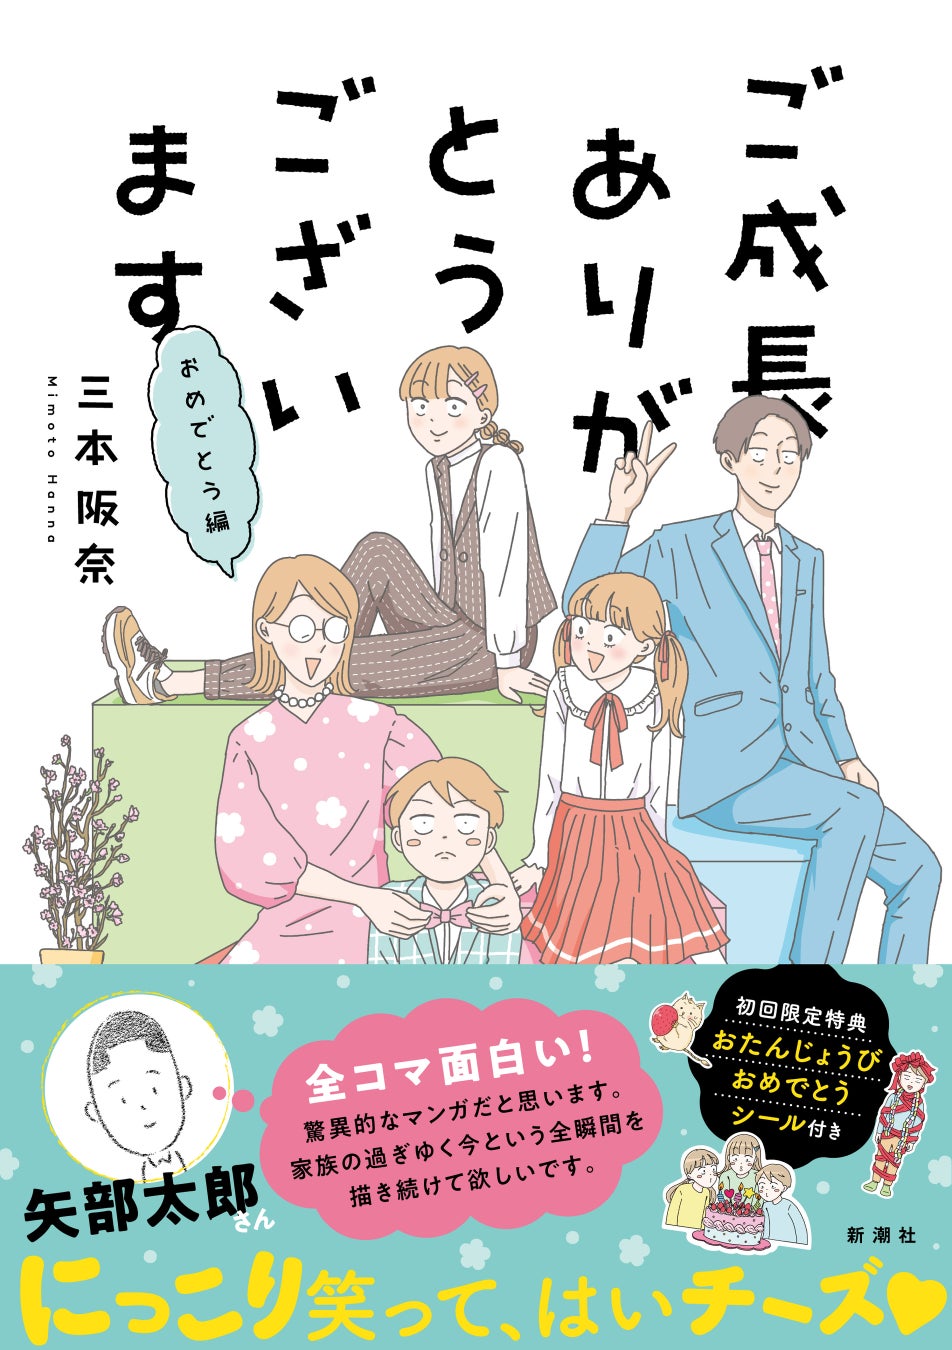 矢部太郎さんも「全コマ面白い！」と絶賛　かわいくて笑える5人家族の日常を描いた『ご成長ありがとうございます おめでとう編』発売